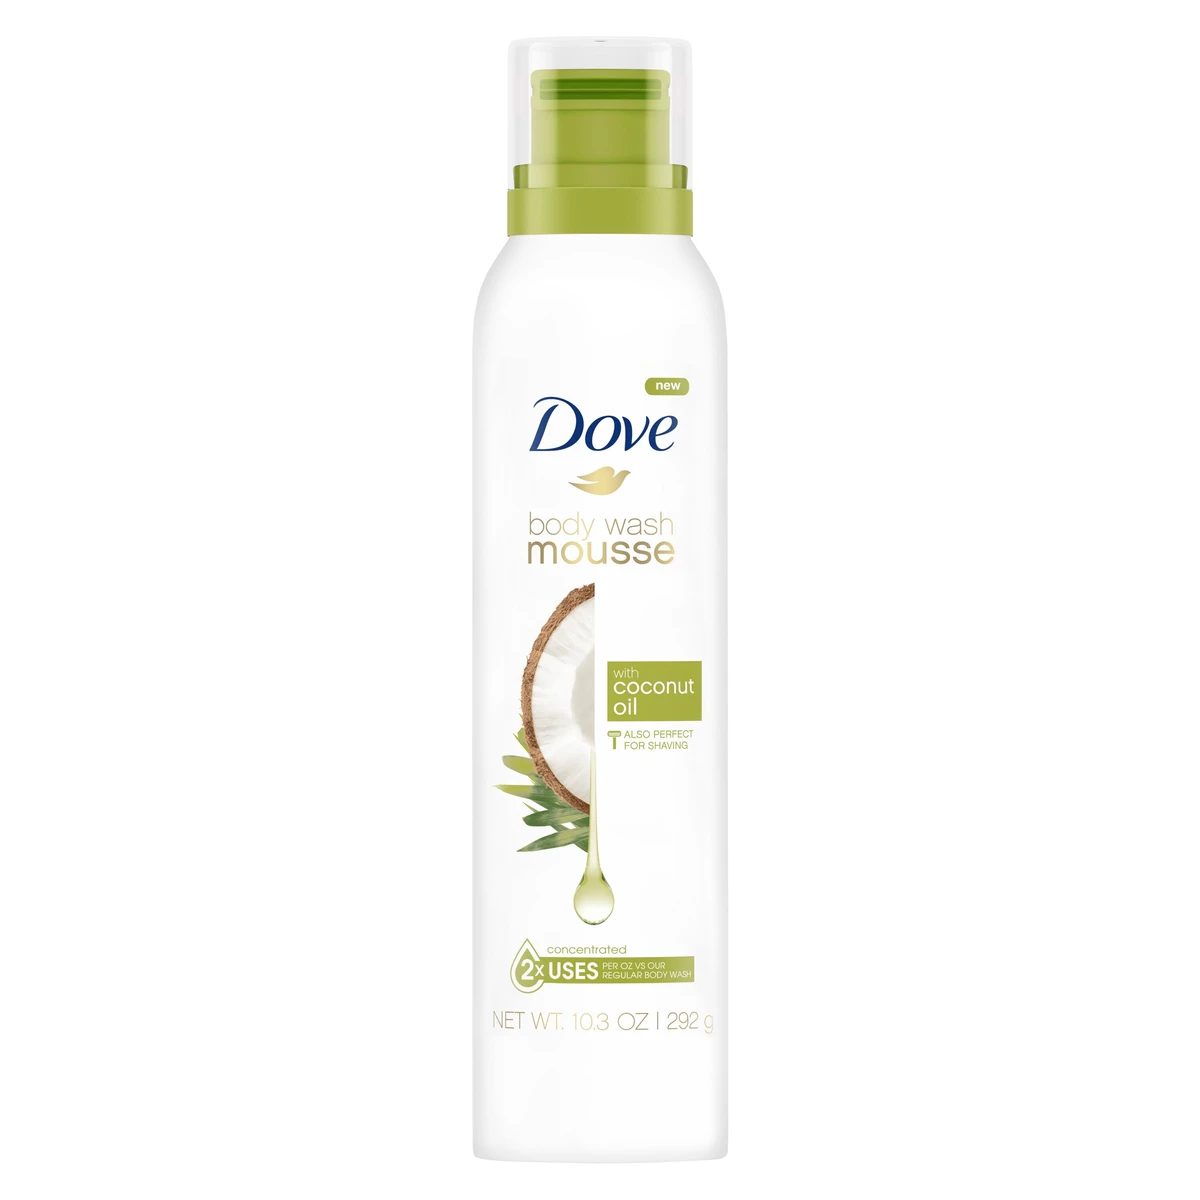 Dove Coconut Oil Paraben Free Shave & Body Wash Mousse  10.3 fl oz